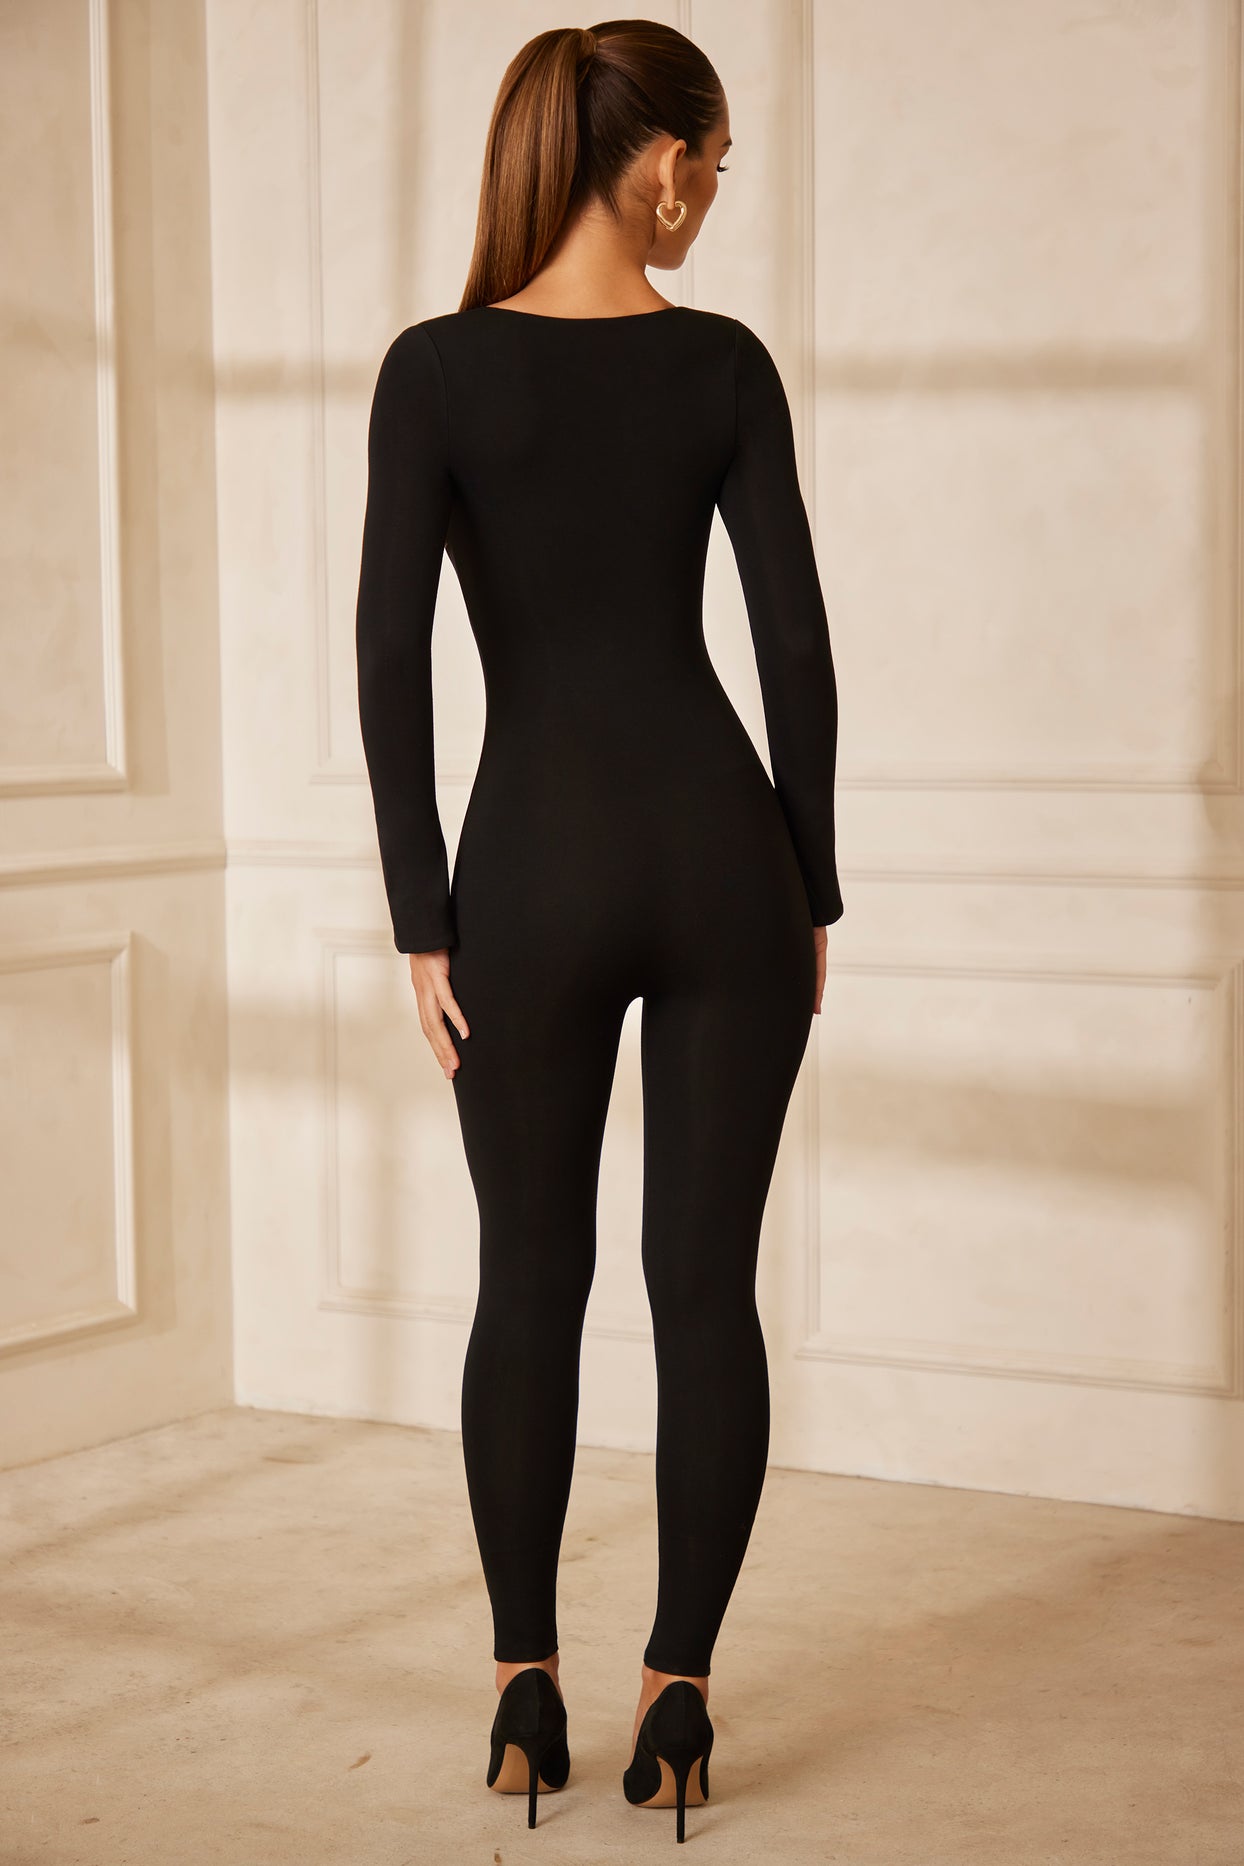 Sweetheart Neckline Long Sleeve Jumpsuit in Black